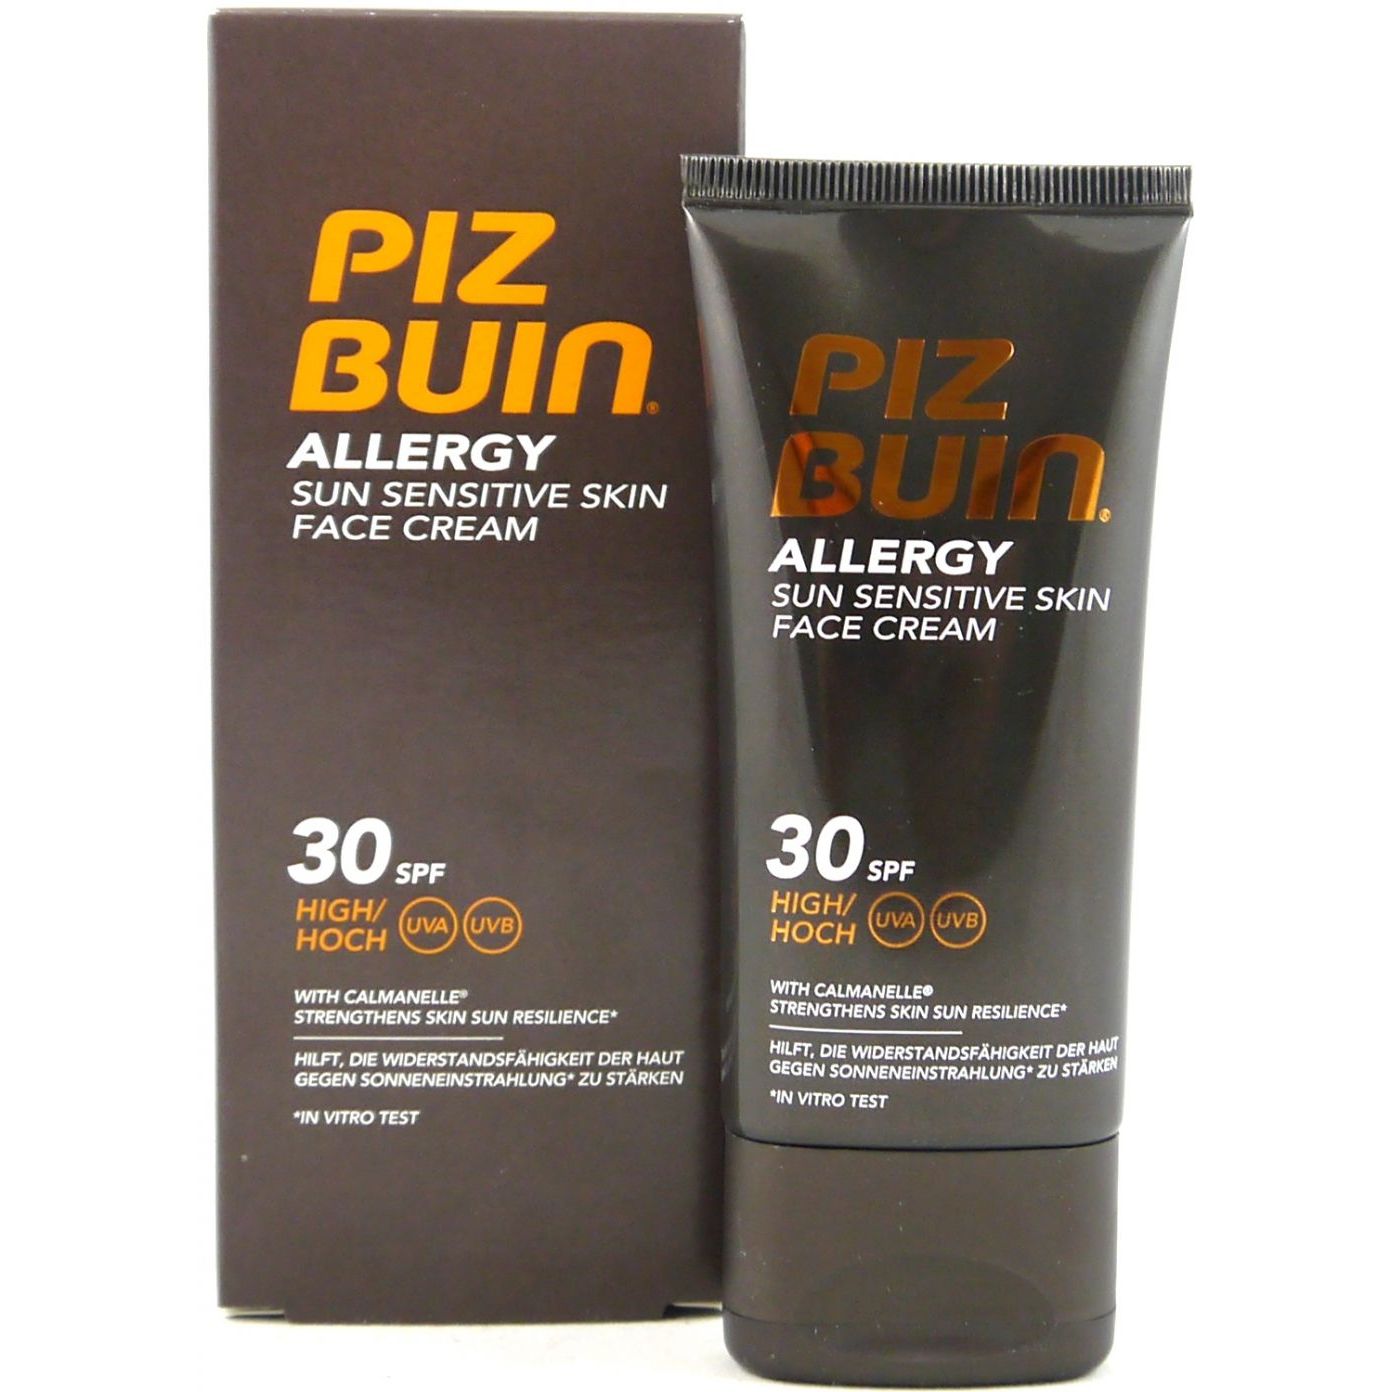 Piz Buin Allergy Gesichtscreme SPF 30 hoher Schutz 50ml Face Cream bei